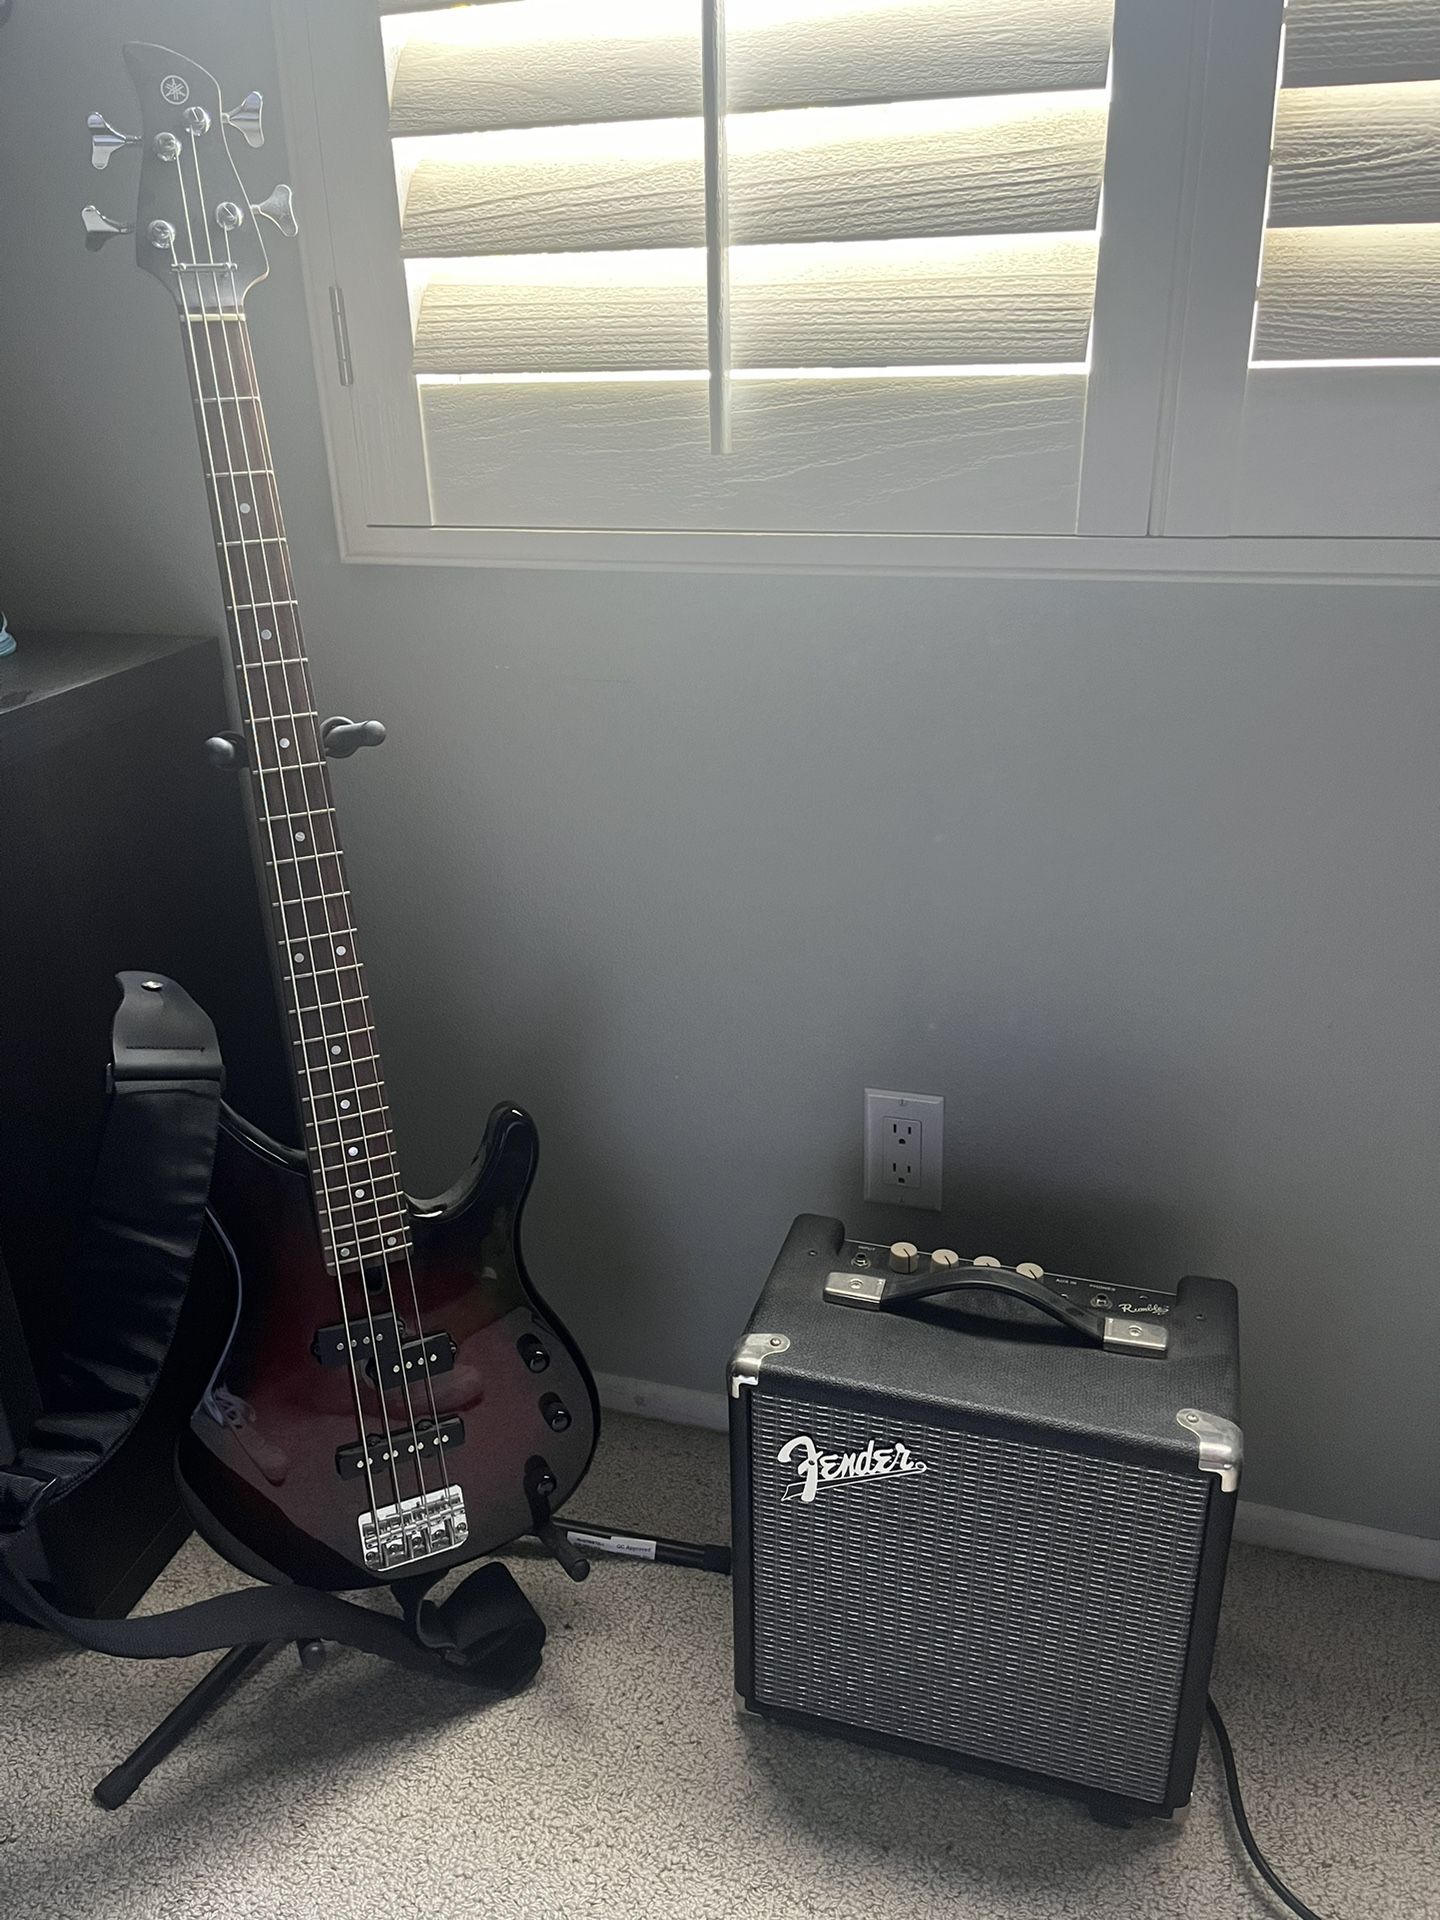 Yamaha Bass Guitar and Fender Amp